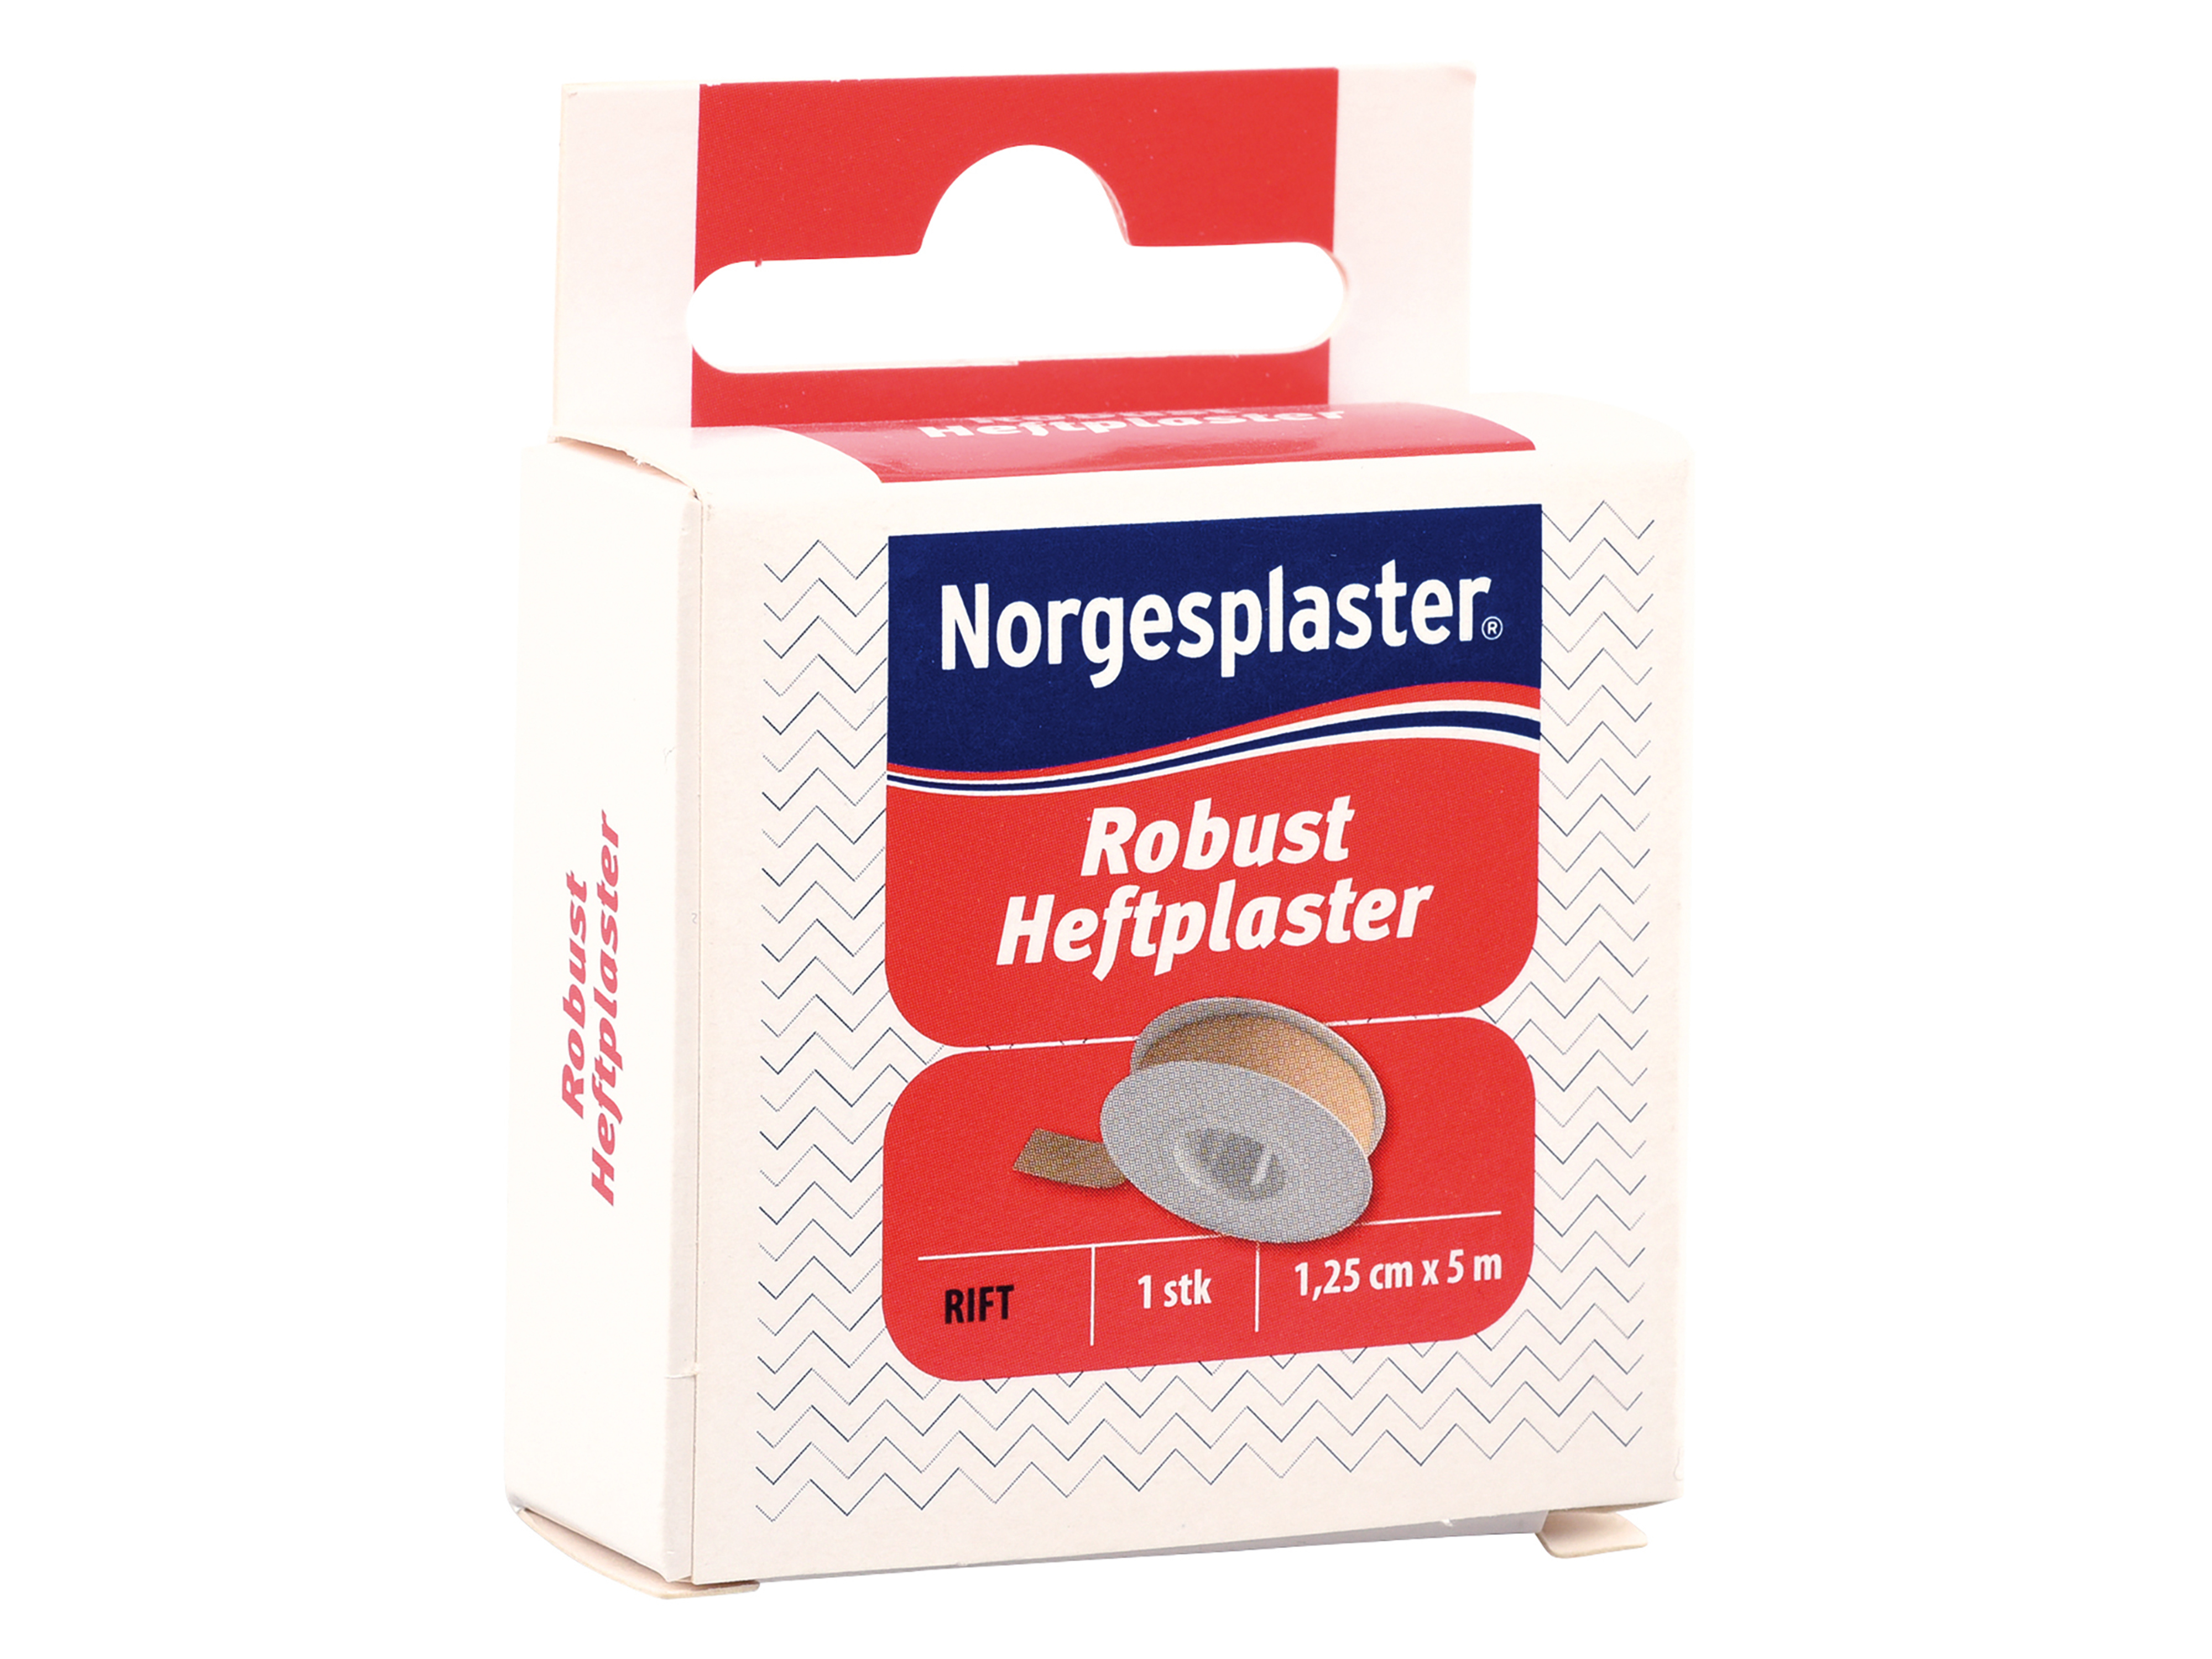 Norgesplaster Norgesplaster Robust heftplaster, 1,2cm x 5m, 1 stk.